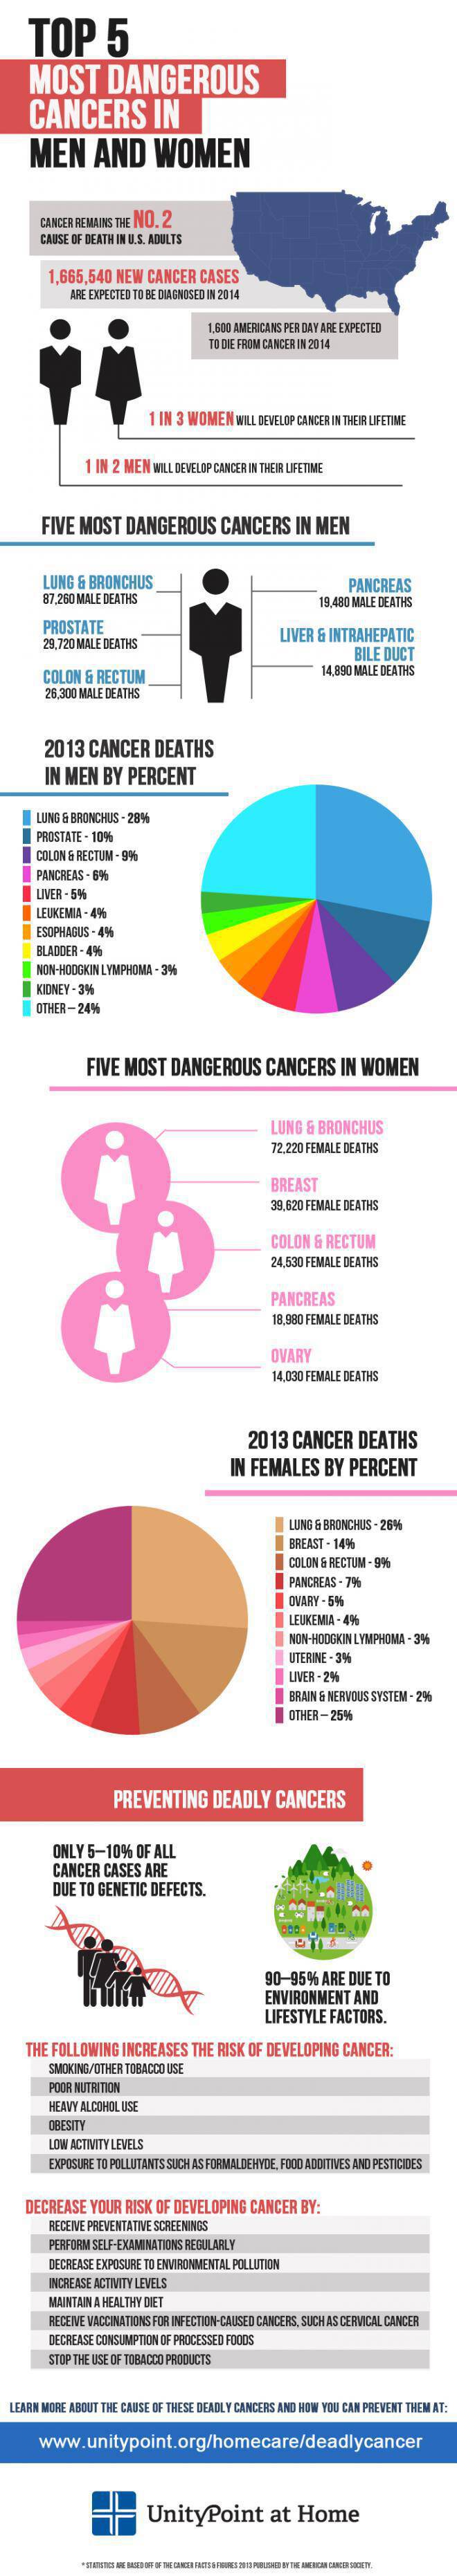 Ποιος είναι ο πιο θανατηφόρος καρκίνος για άντρες και γυναίκες